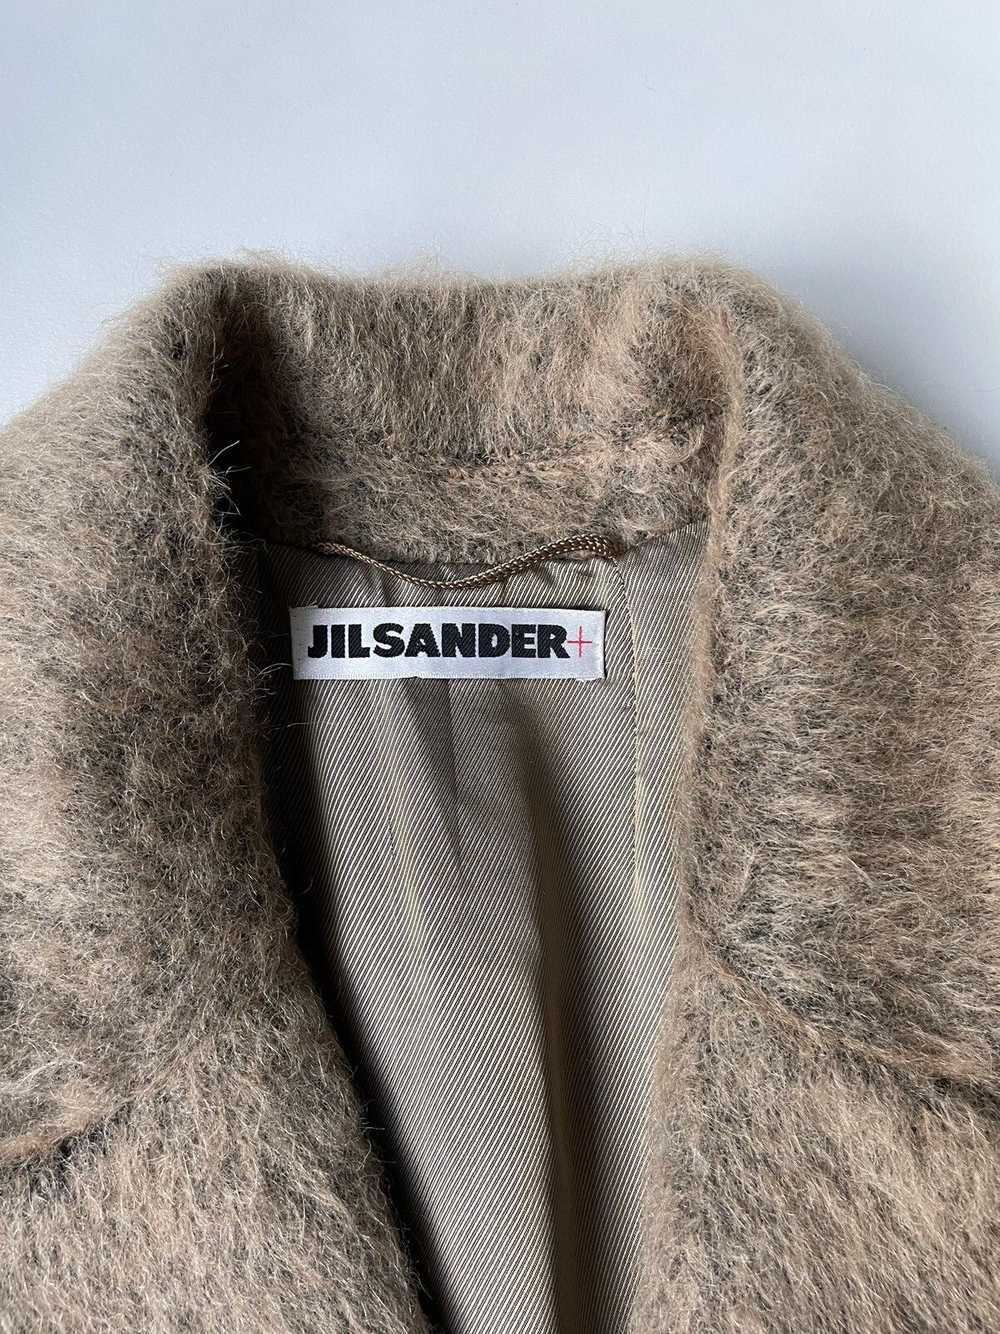 Jil Sander Early 2000s Fuzzy Alpaca Overcoat - image 3